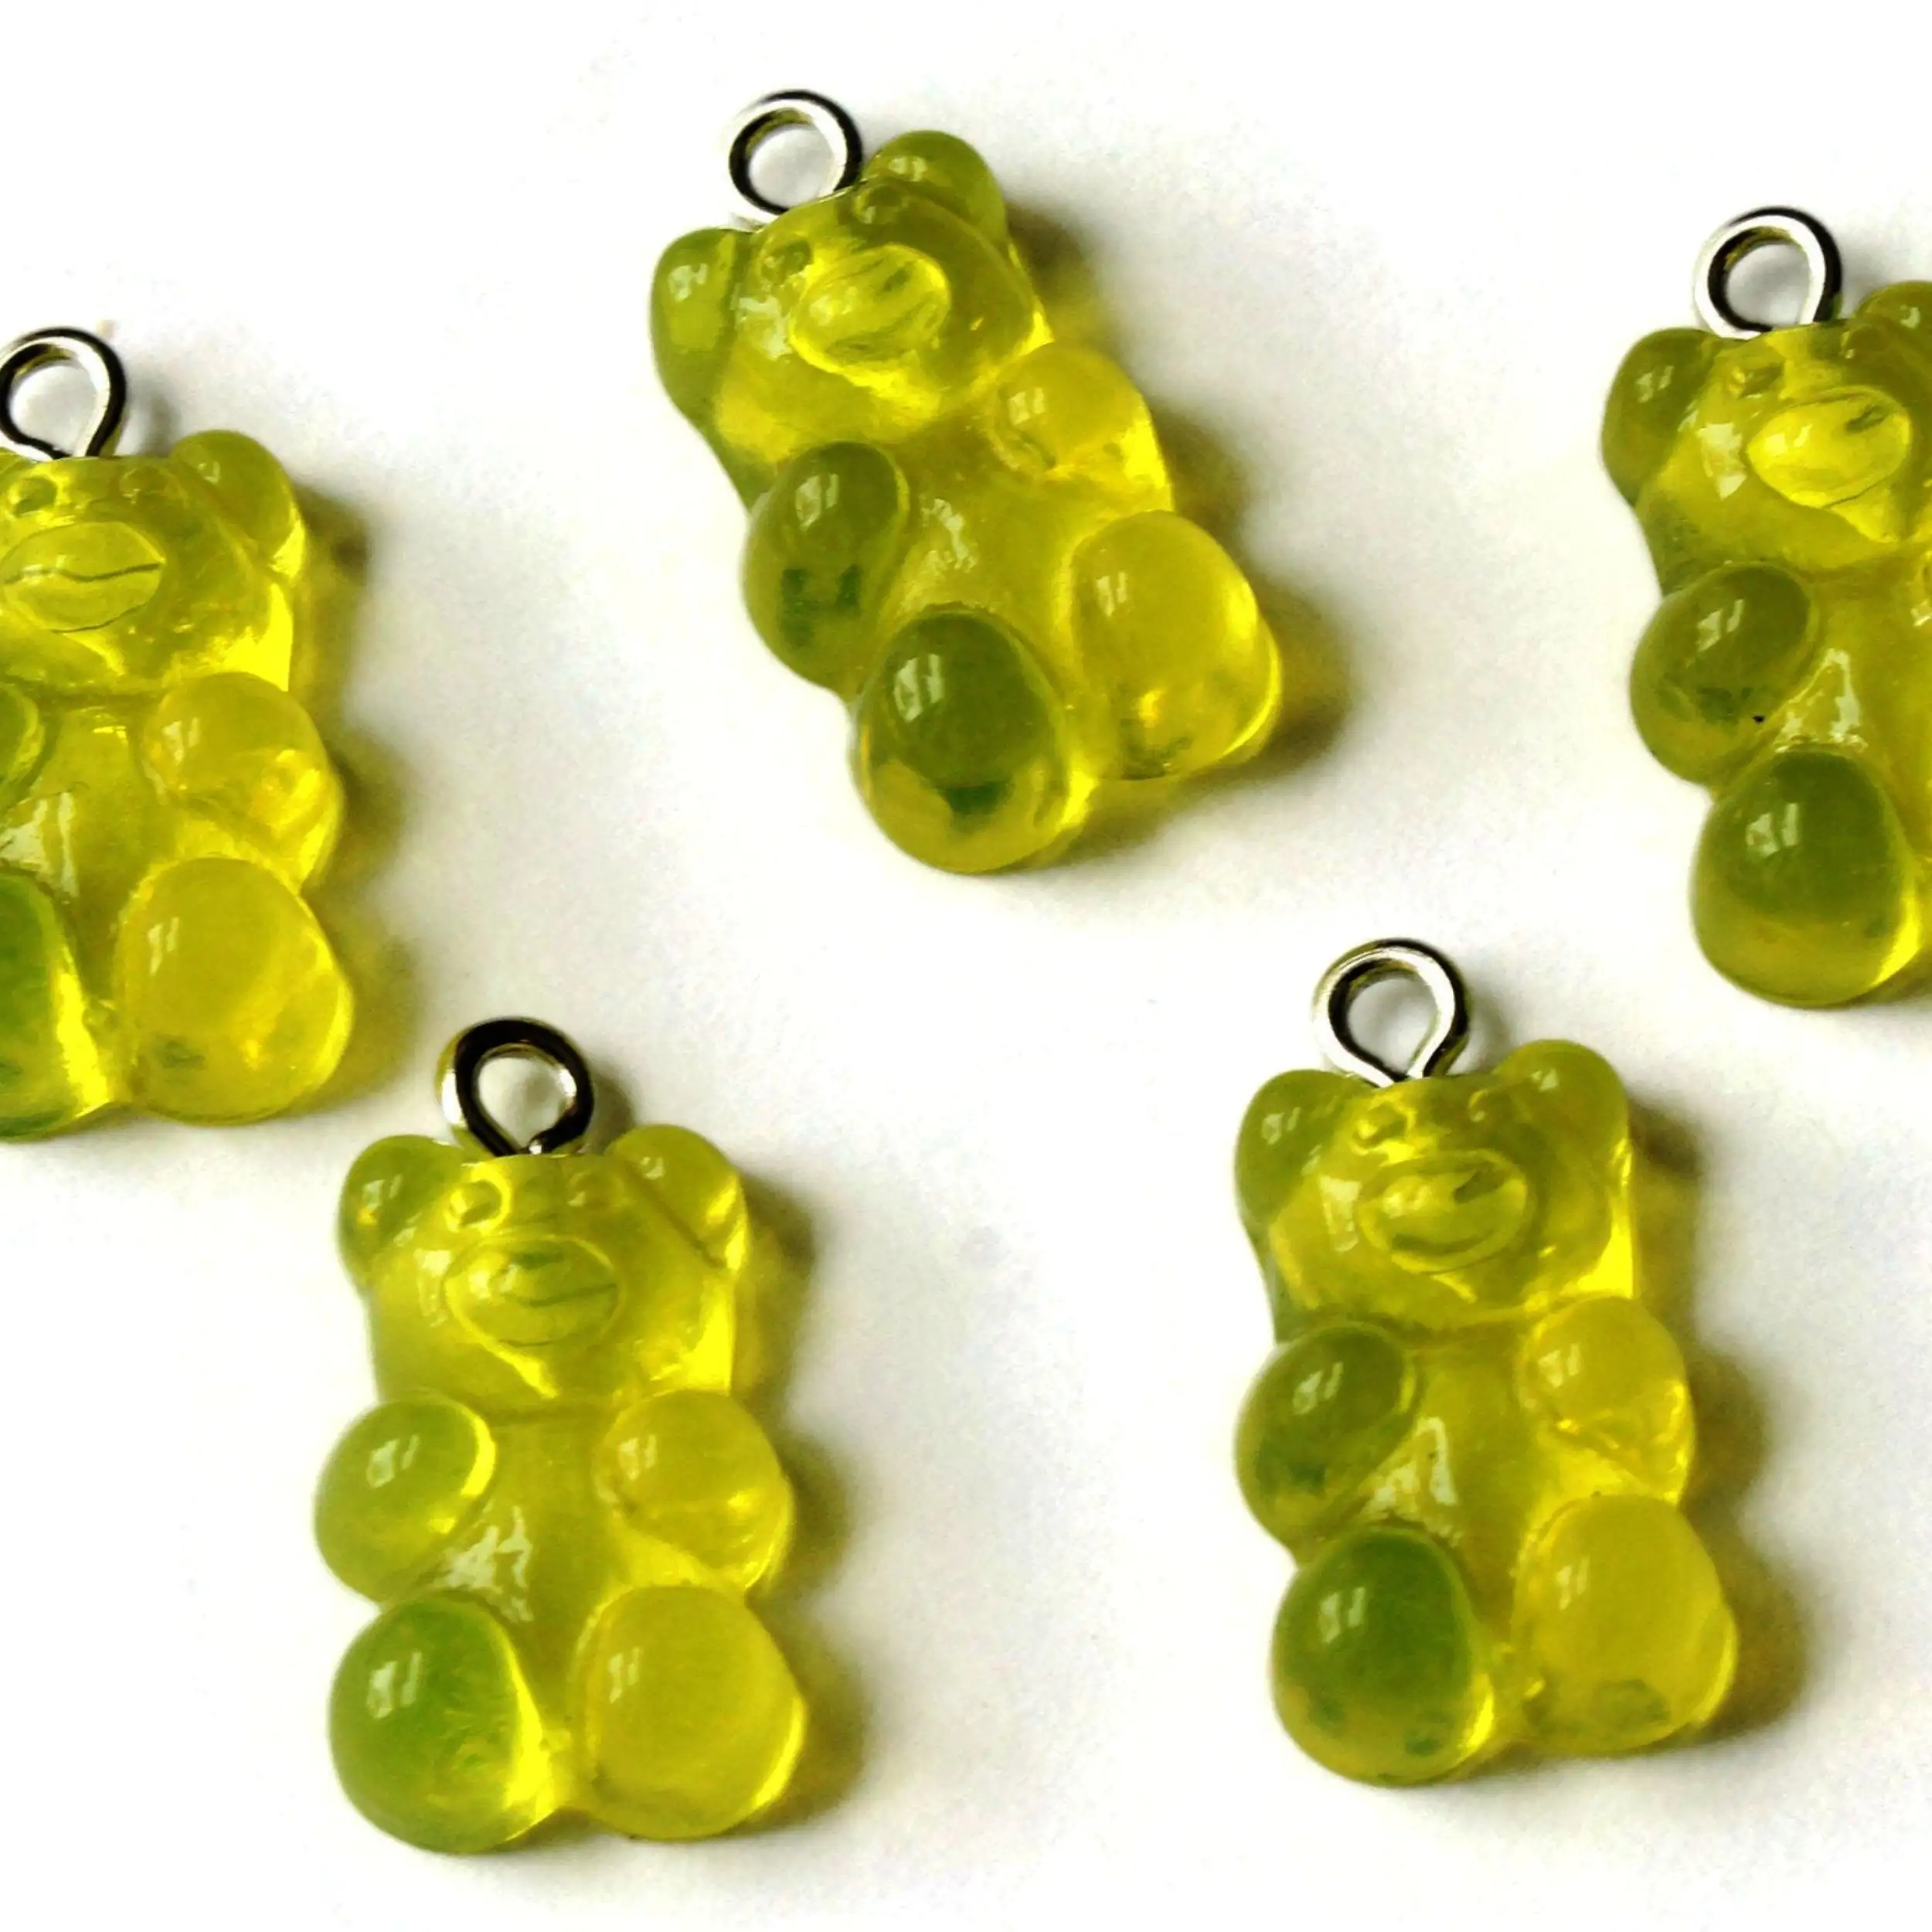 5 20 มม.เรซิ่นสีเหลือง Gummy Bear Charms สีที่กําหนดเองและขนาดลูกปัดเรซิ่นทําด้วยมือที่ไม่ซ้ํากัน Ultra เงาอินเดียแหล่งกําเนิดสินค้า